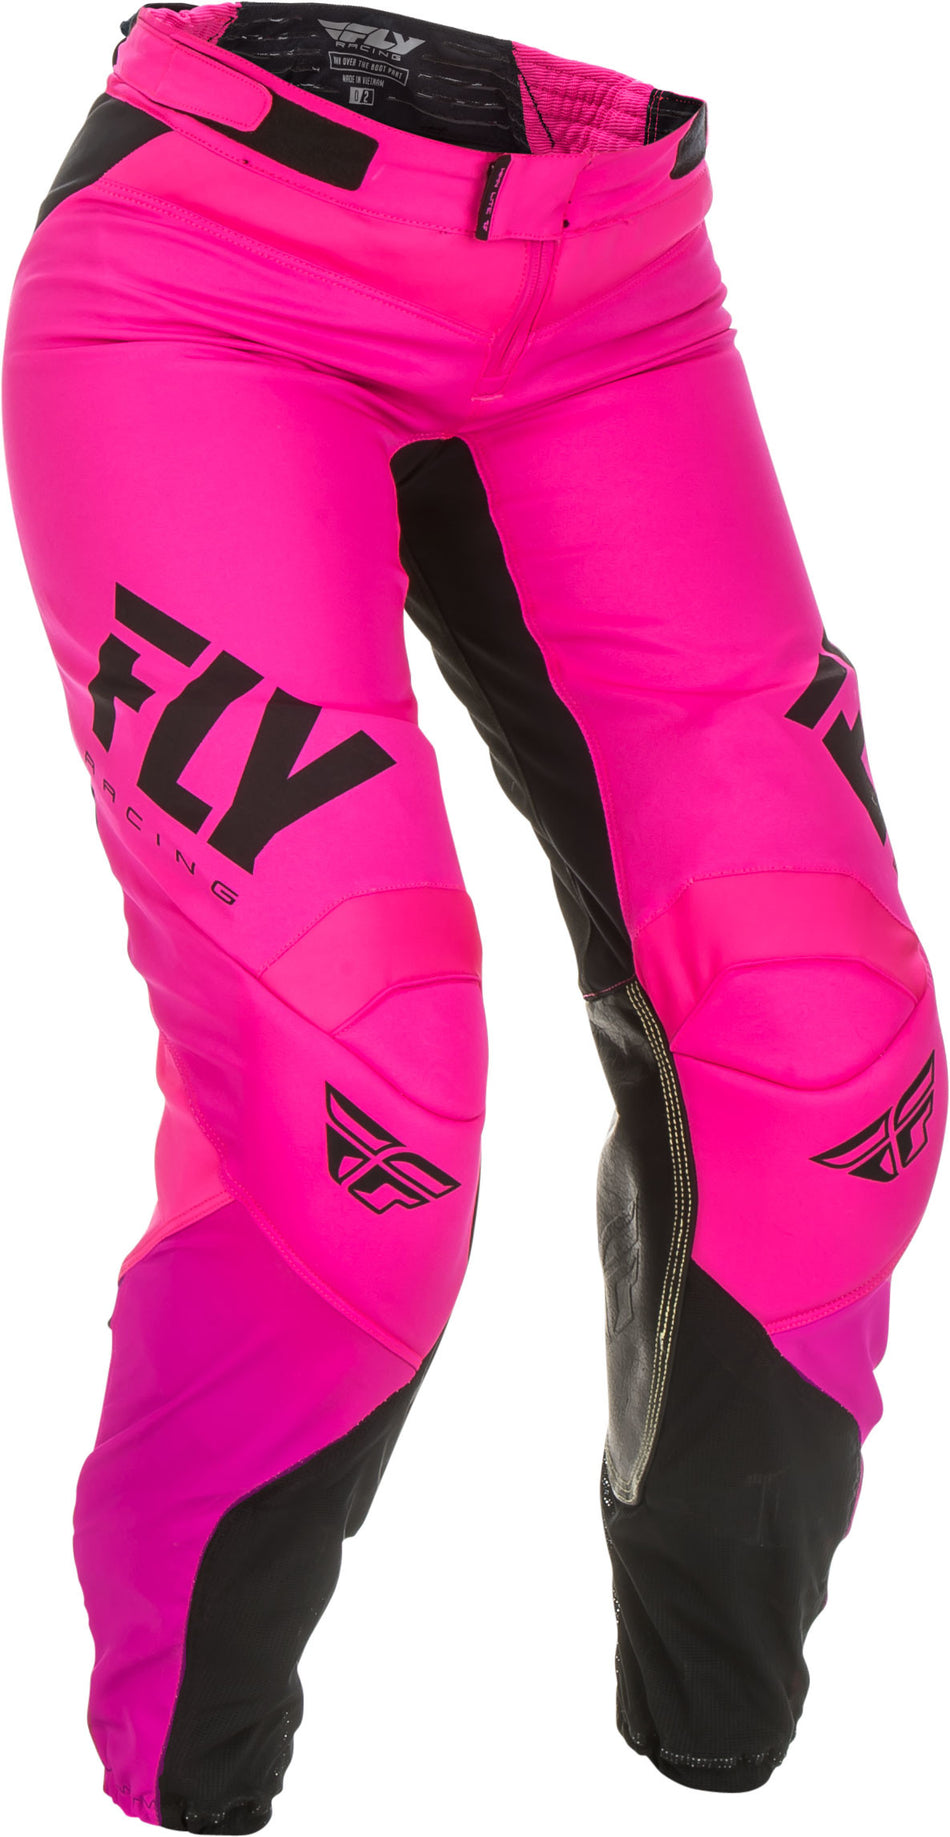 FLY RACING Women's Lite Race Pants Neon Pink/Black Sz 15/16 372-63811